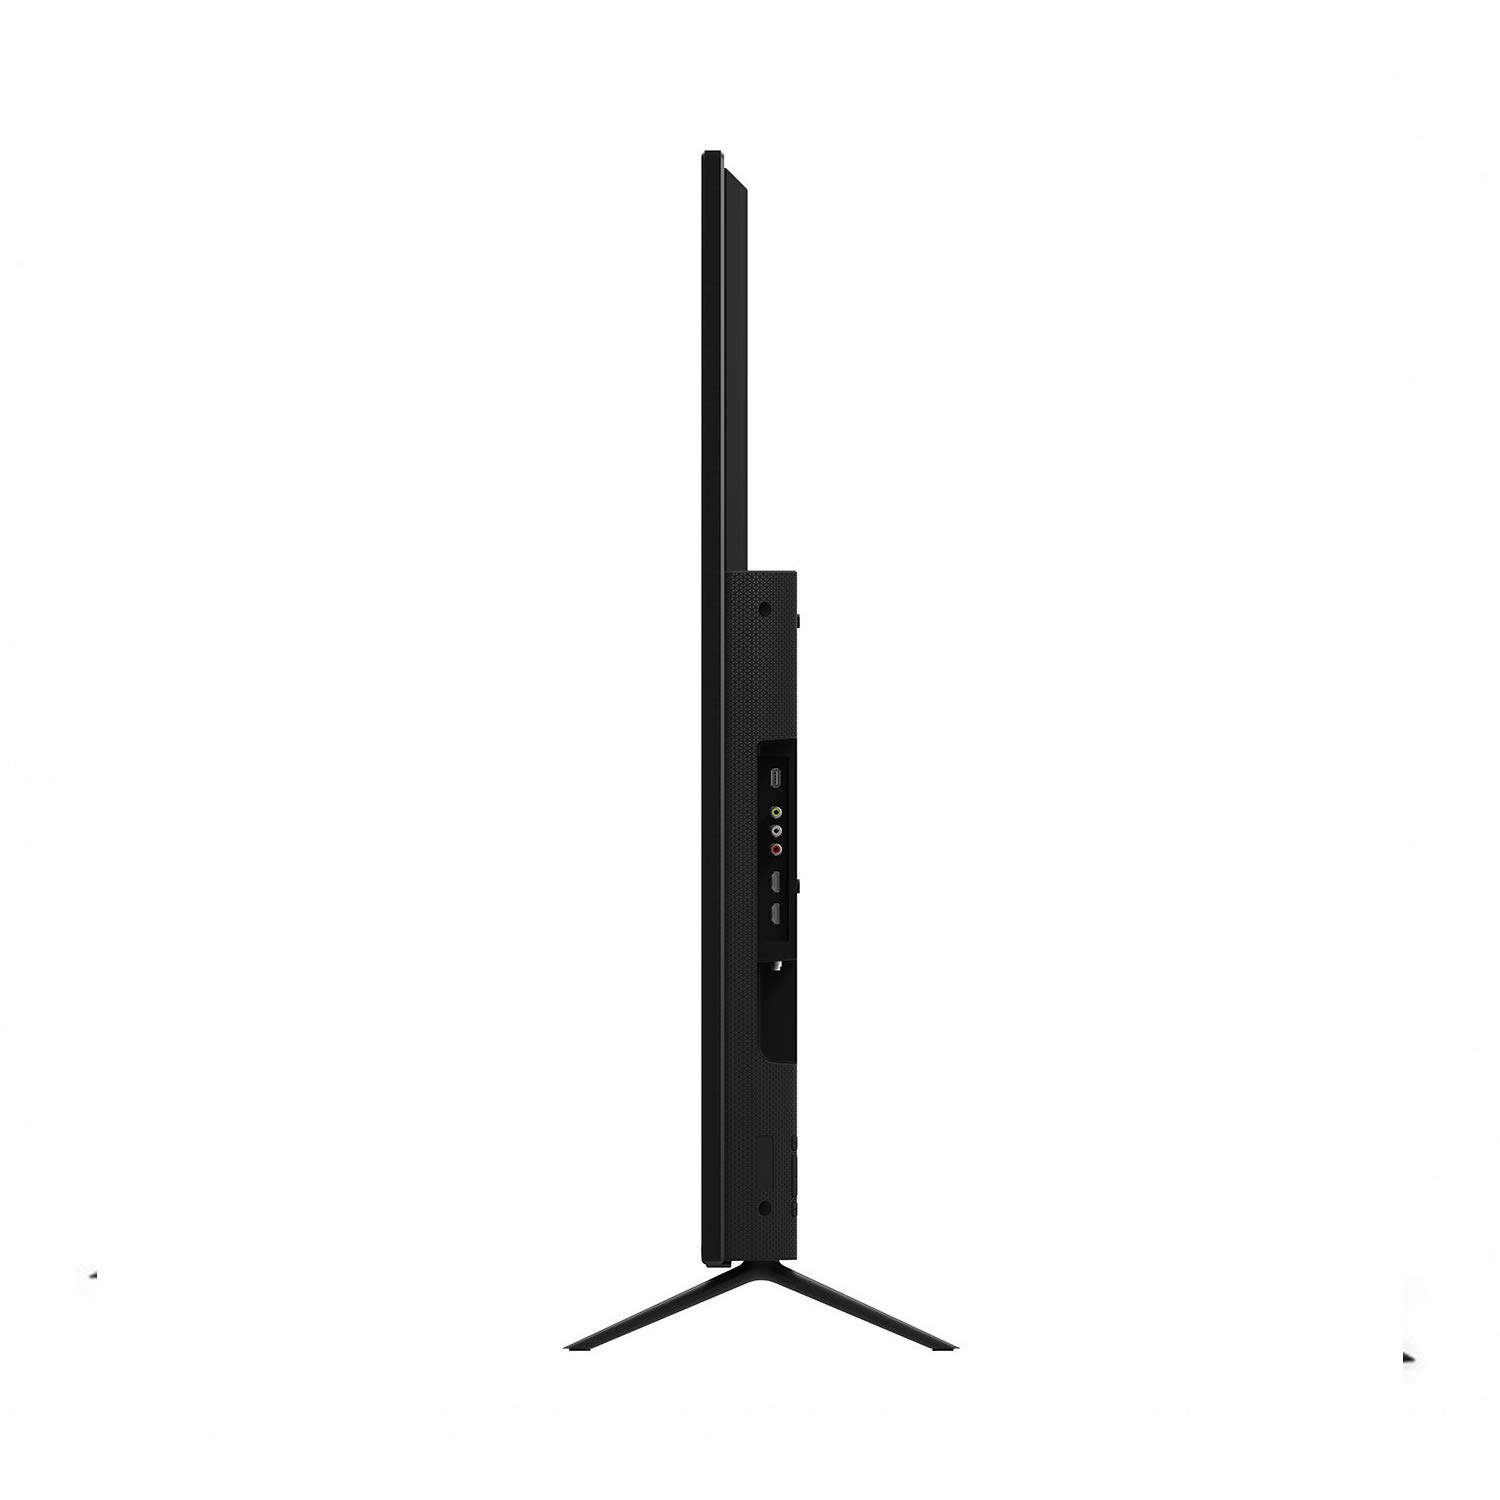 VIZIO M558-G1 M-Series Quantum 55” 4K HDR Smart TV